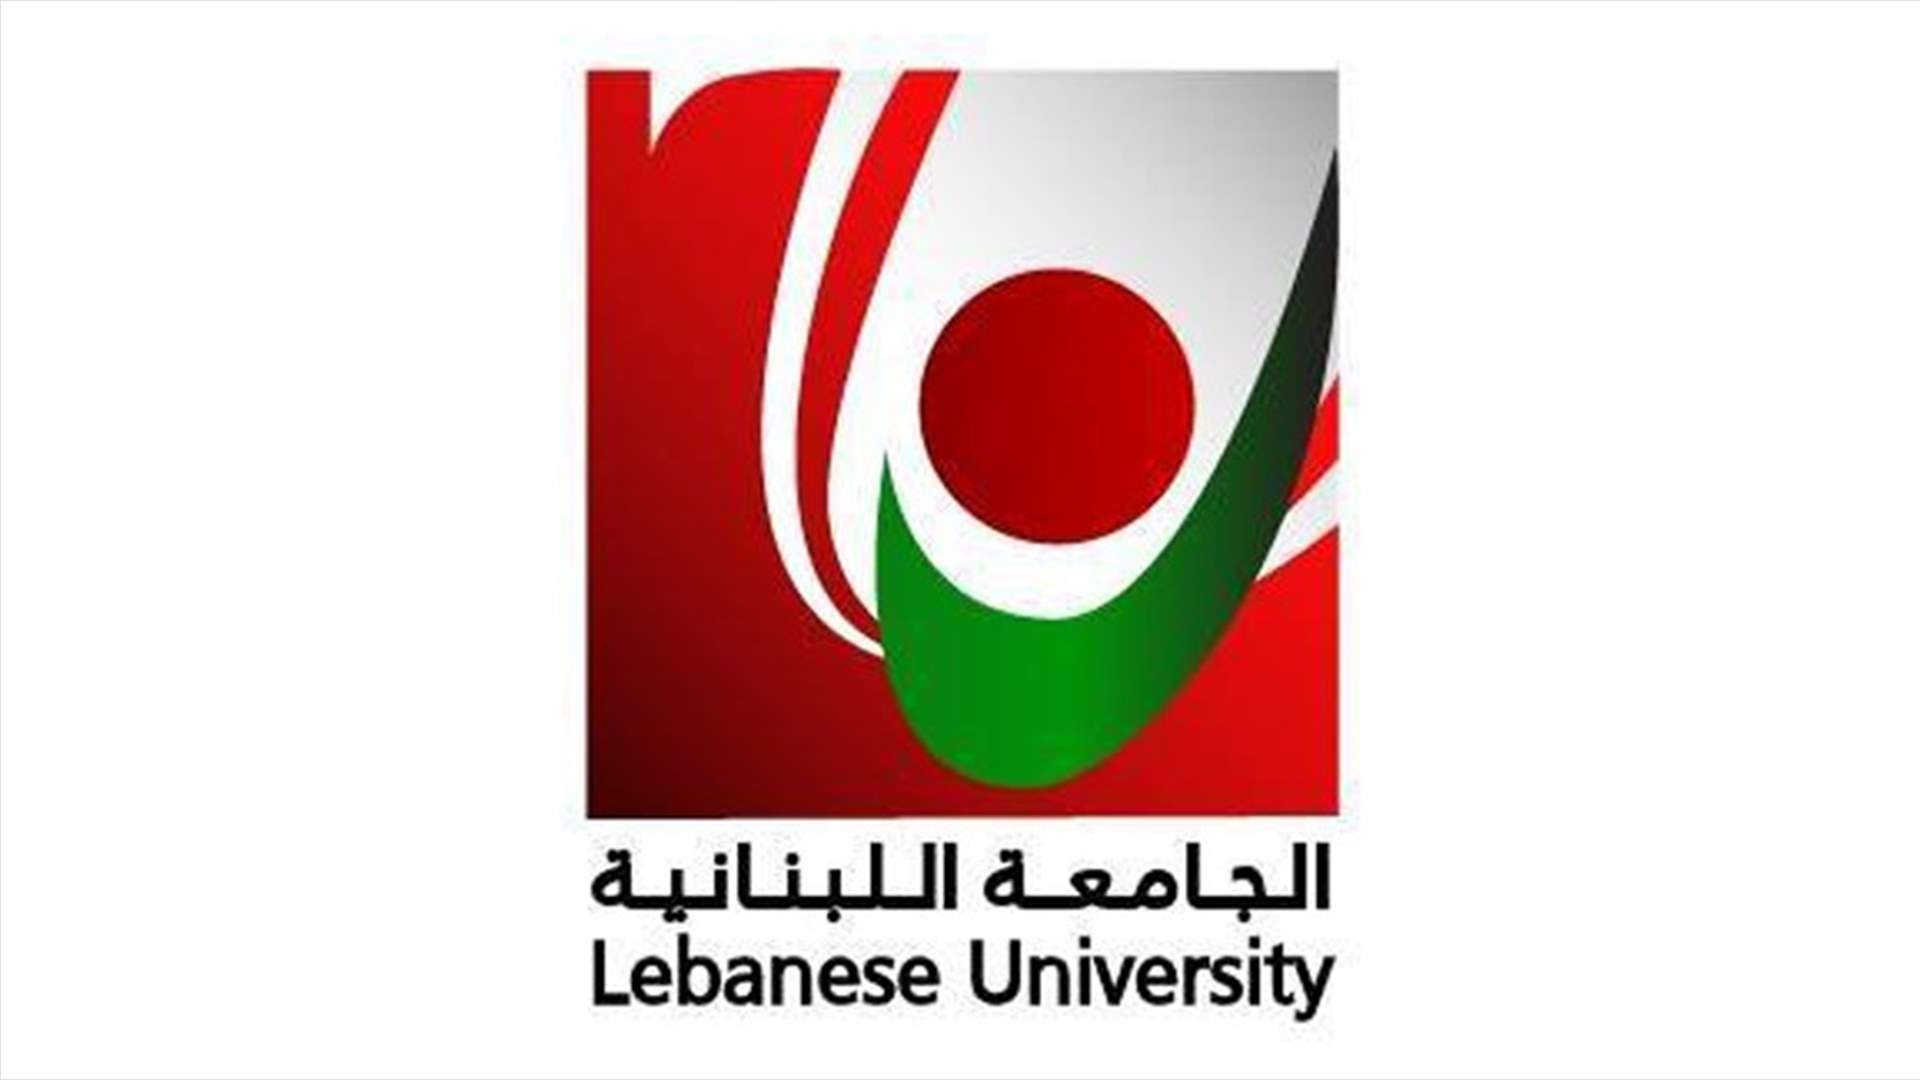 رئاسة الجامعة اللبنانية: من يقود الجامعة حاليا لا يقل كفاءة وقدرة في خدمتها عمن سبقوه